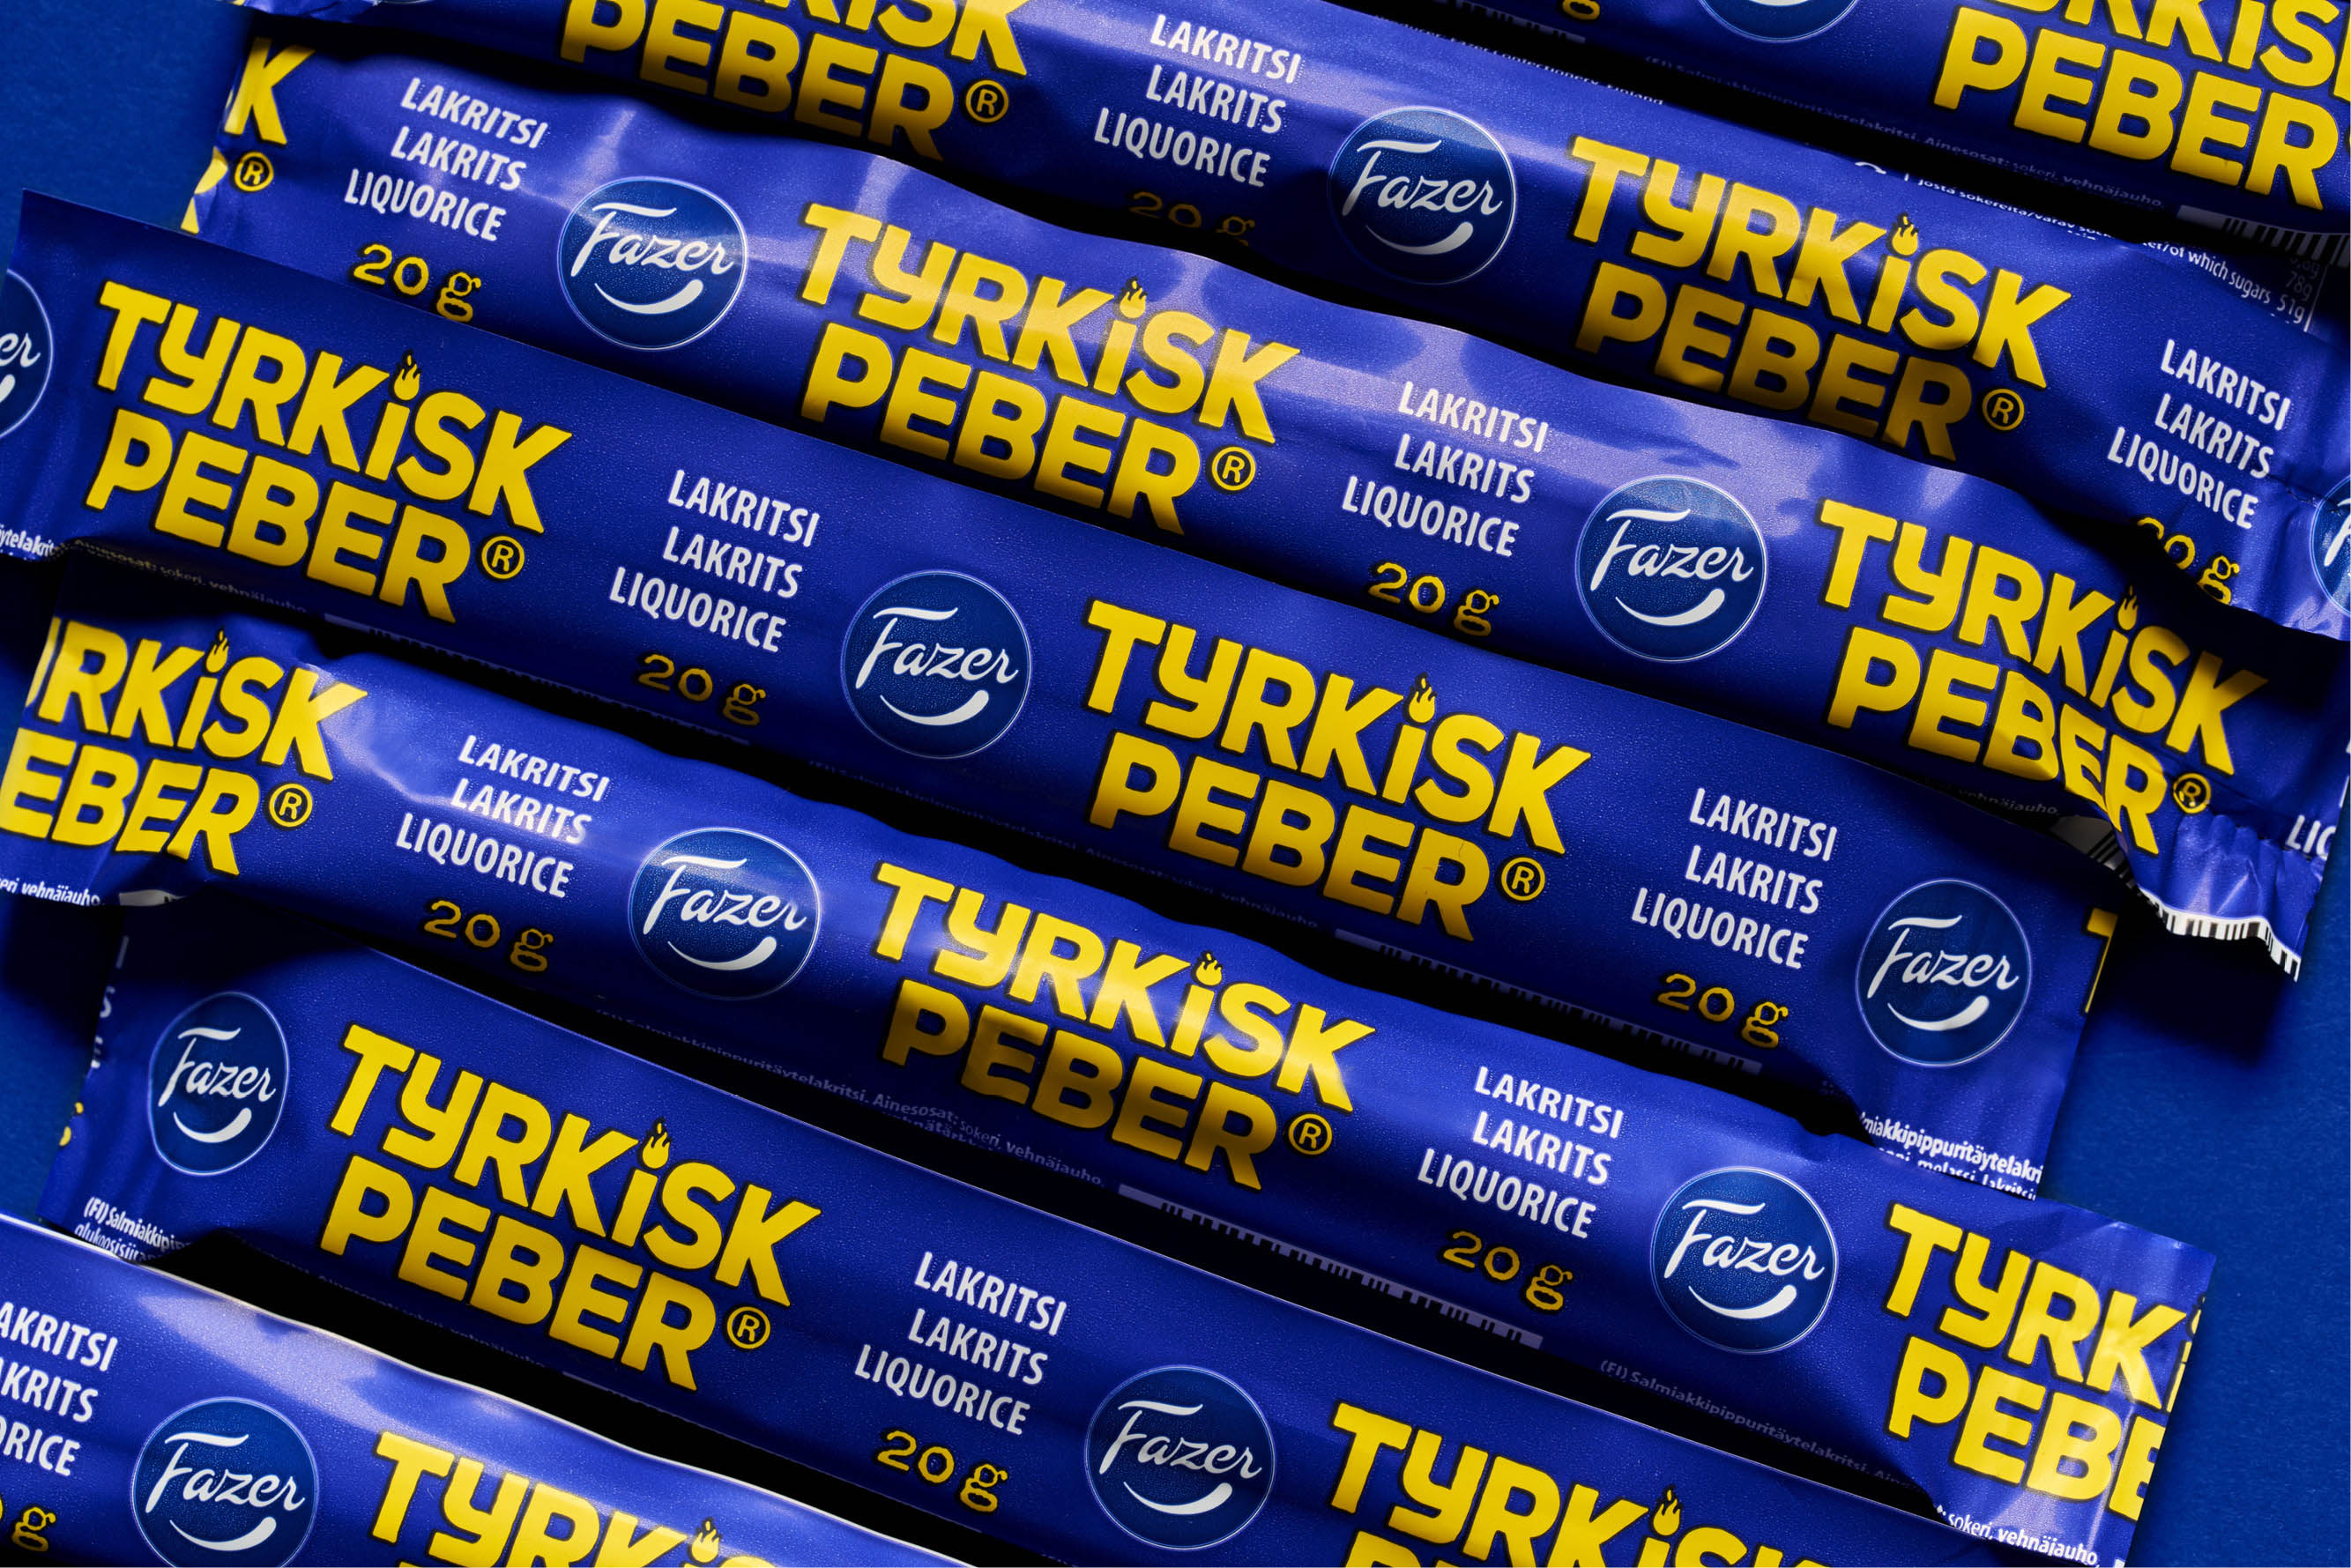 Rebranding for Fazer Tyrkisk Peber by Kuudes